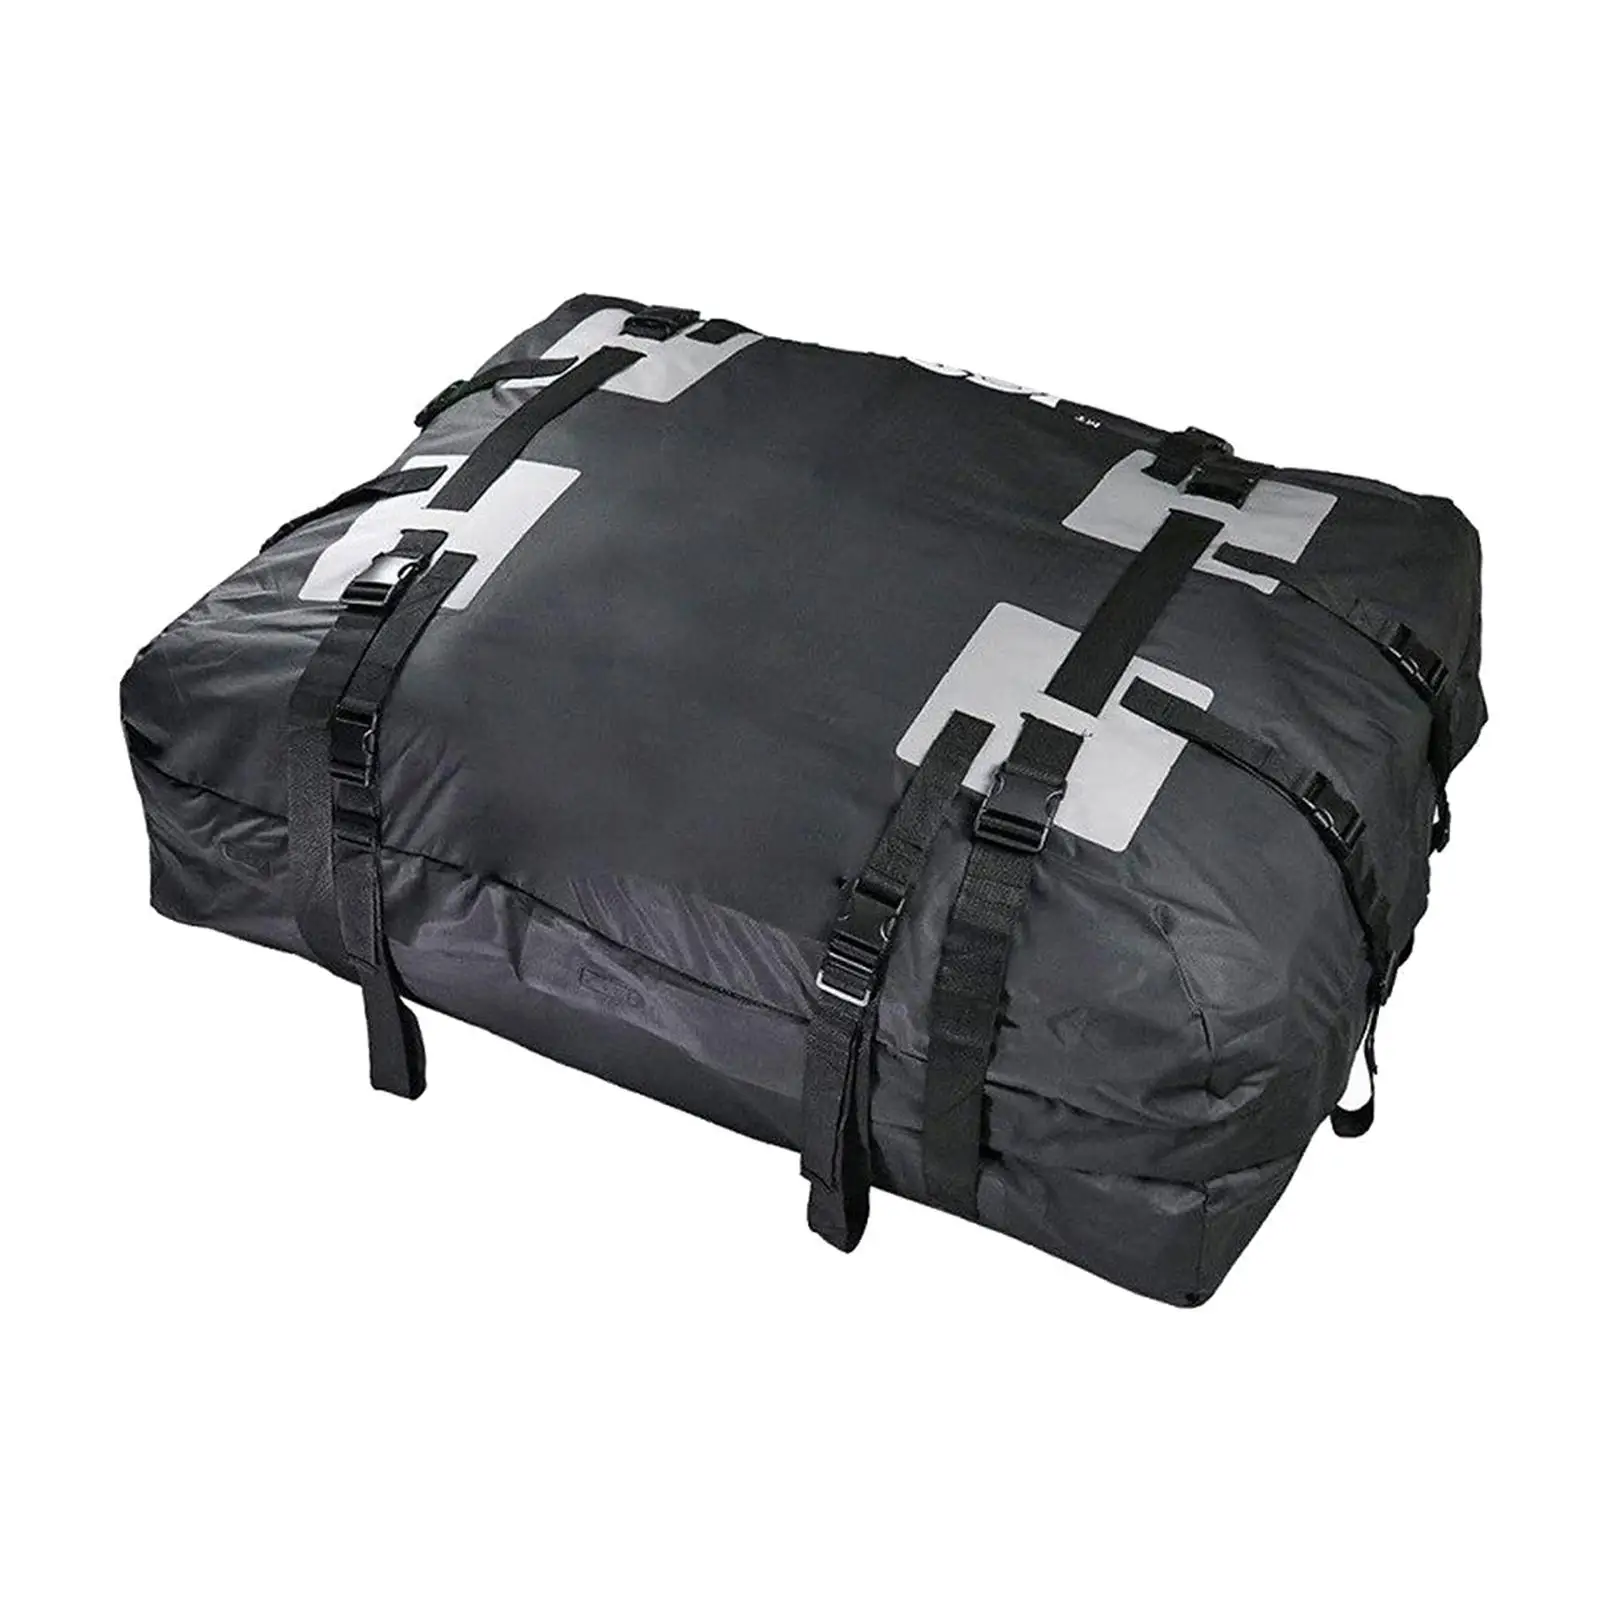 15 Cubic Feet Car Rooftop Bag, Car Roof Luggage Bag, Luggage Storage Waterproof